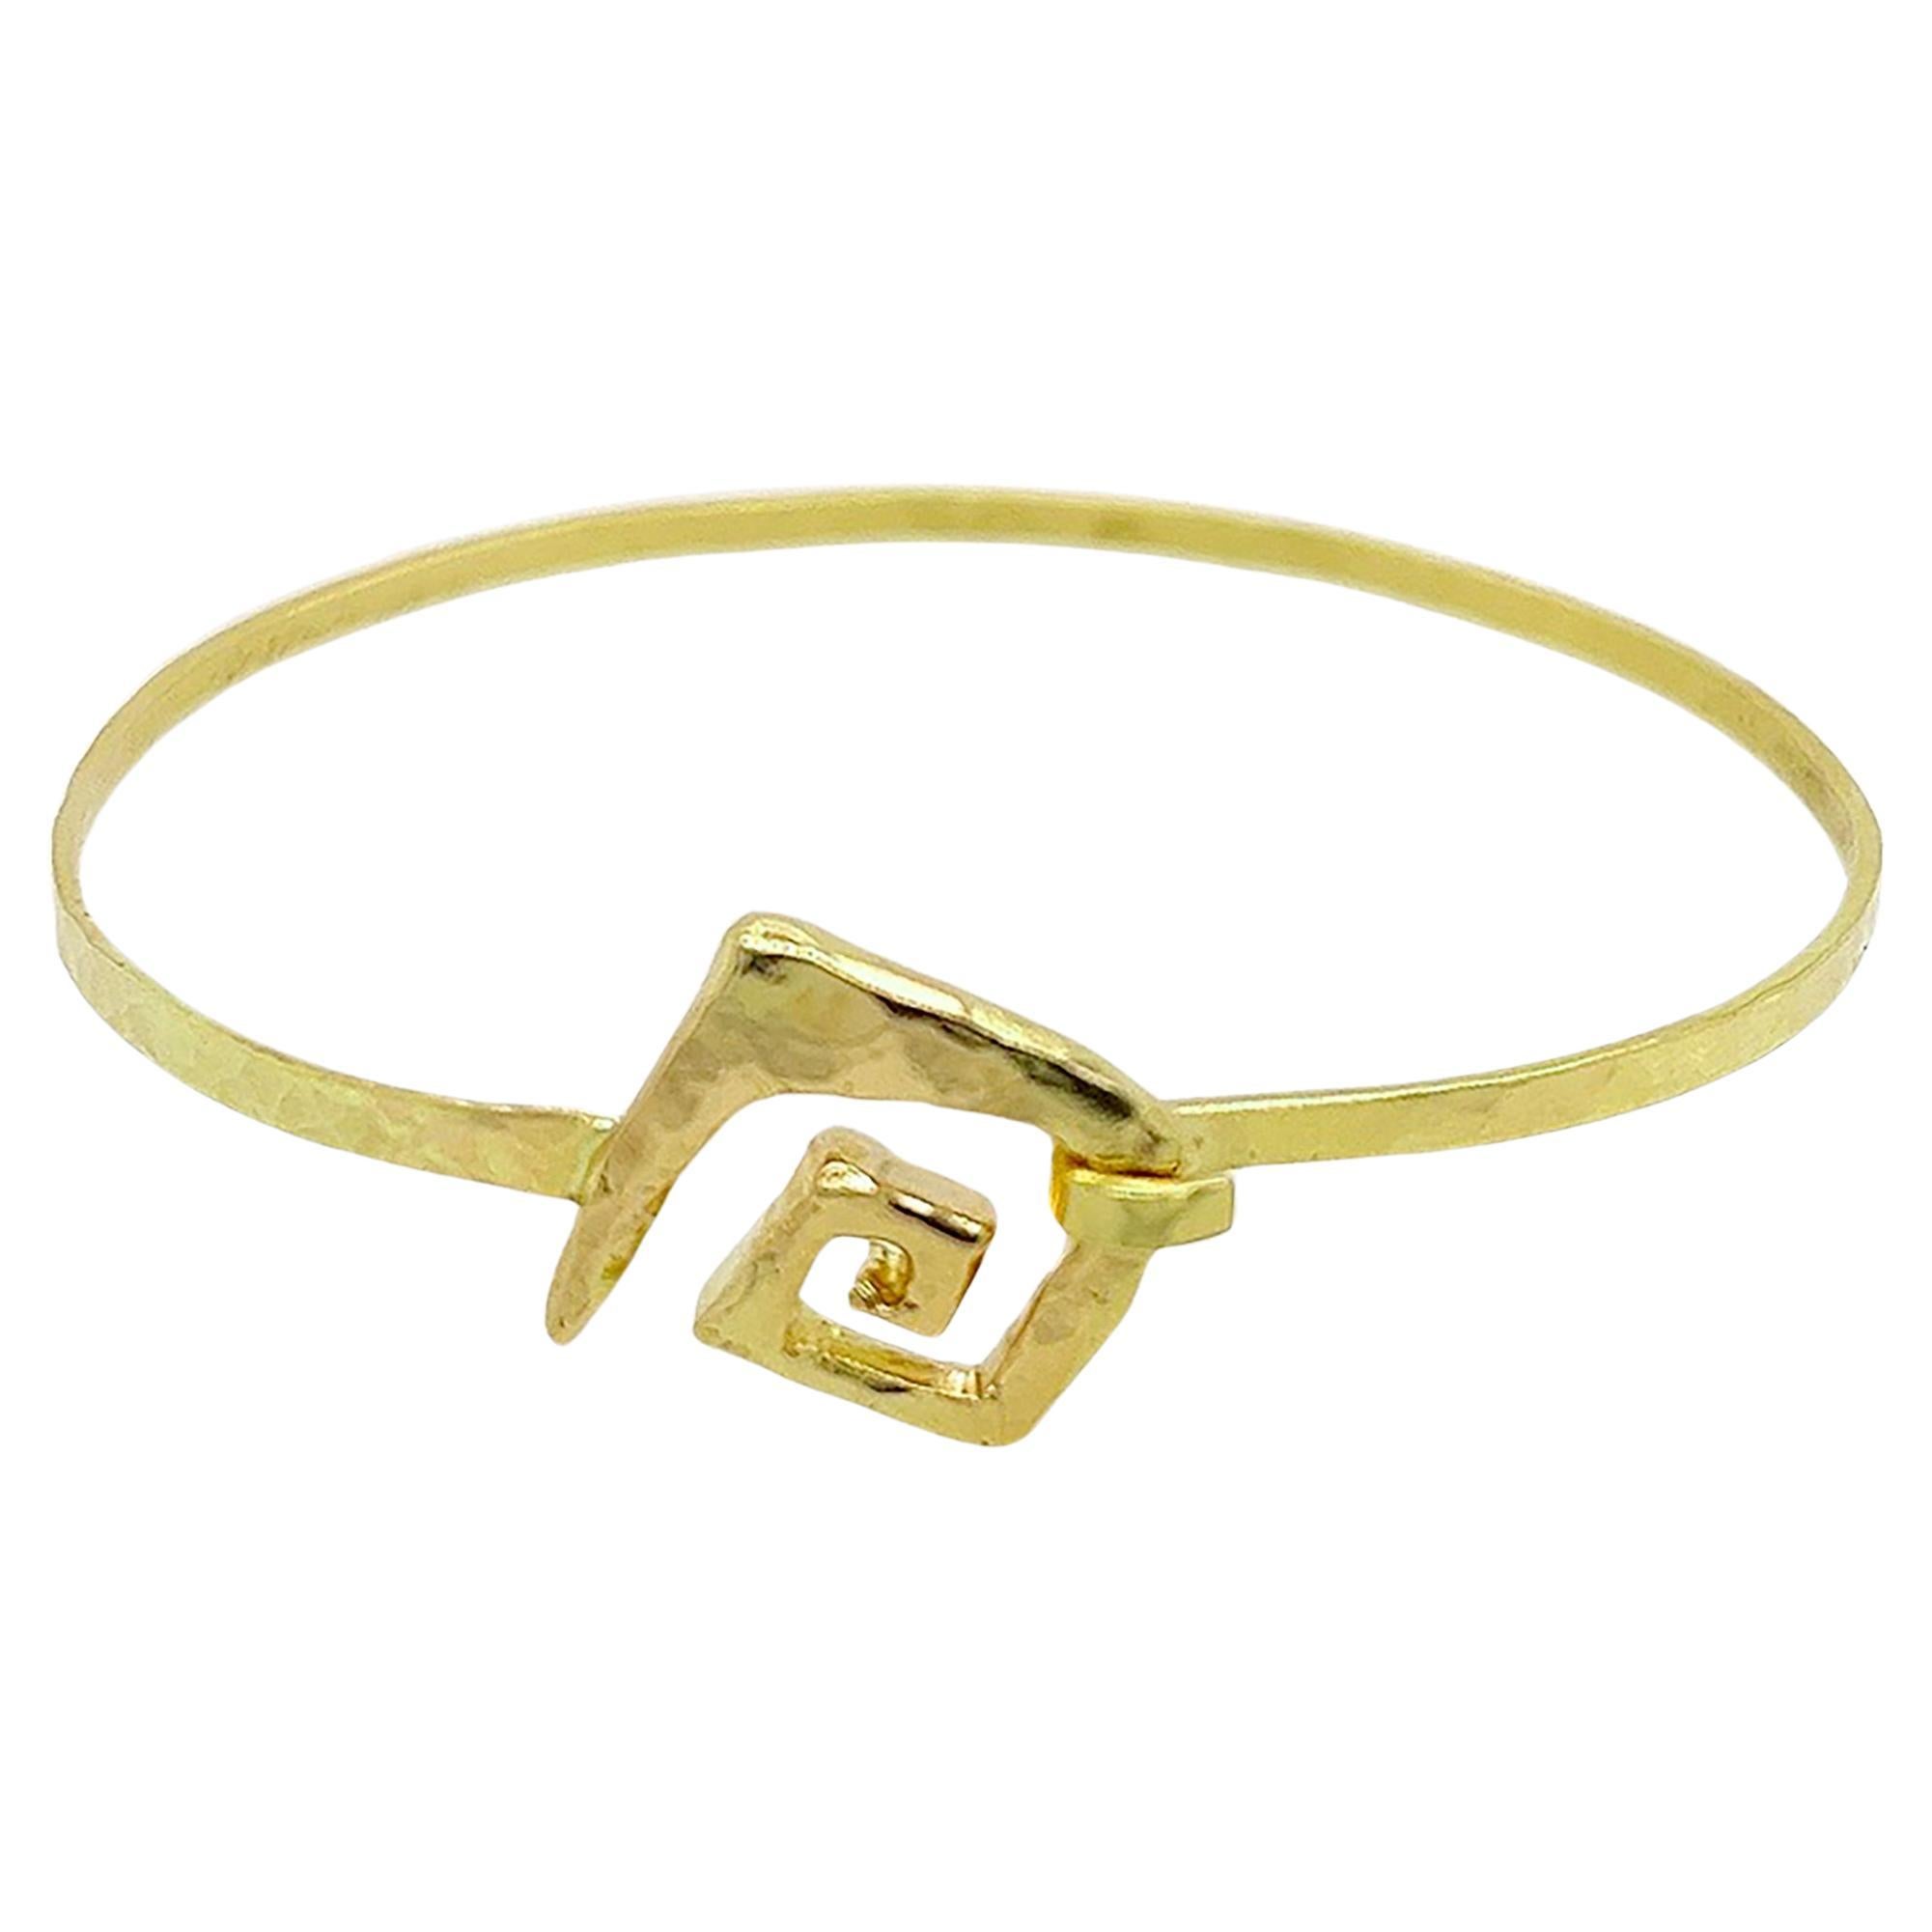 Susan Crow Studio – The Meander Gold Bracelet For Sale